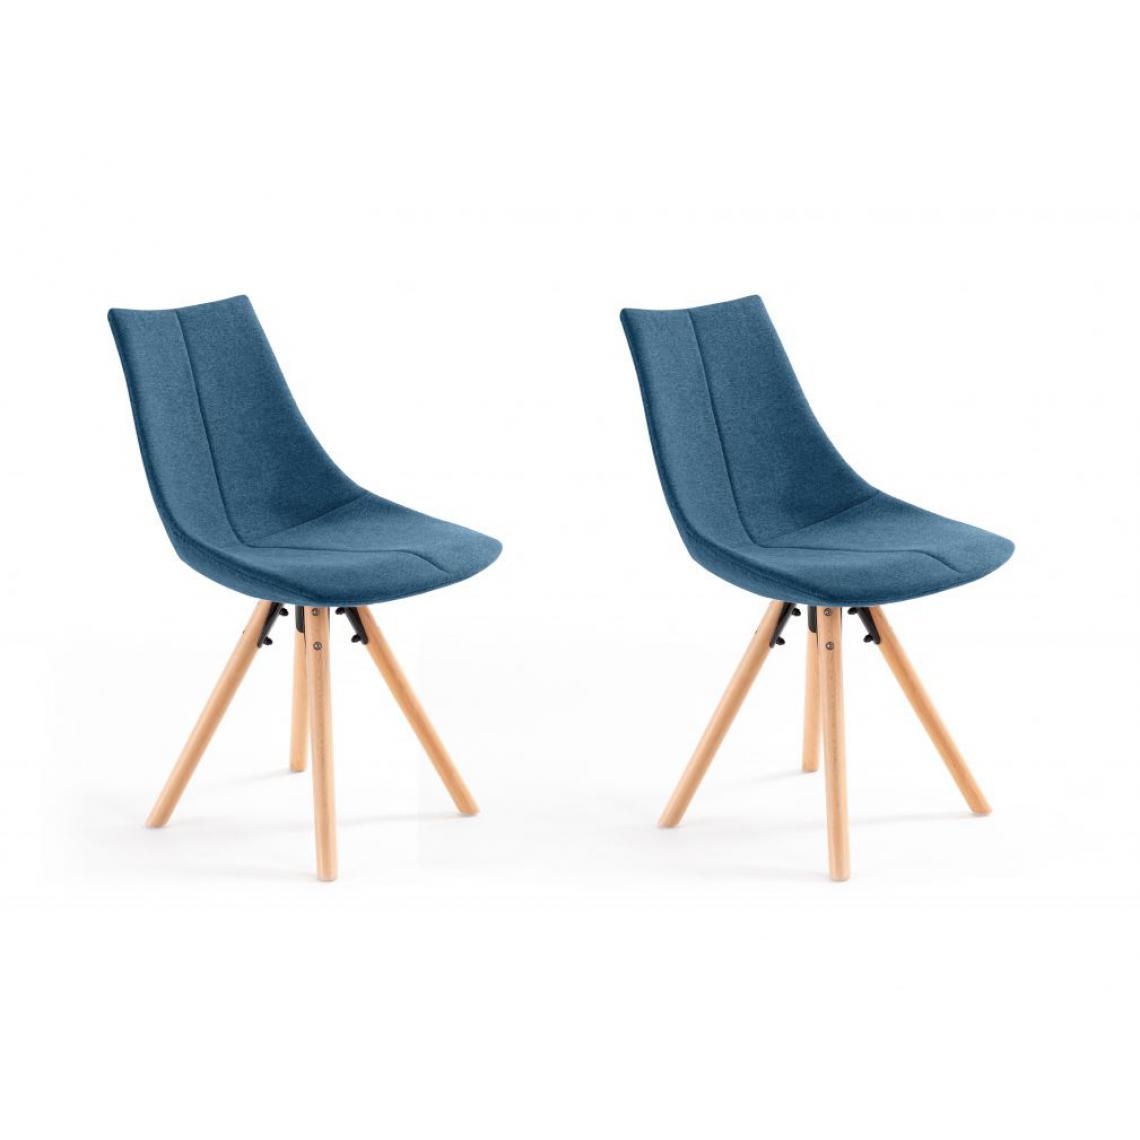 Usinestreet - Lot de 2 chaises LAURIE en tissu et pieds en bois - Bleu pétrole - Chaises